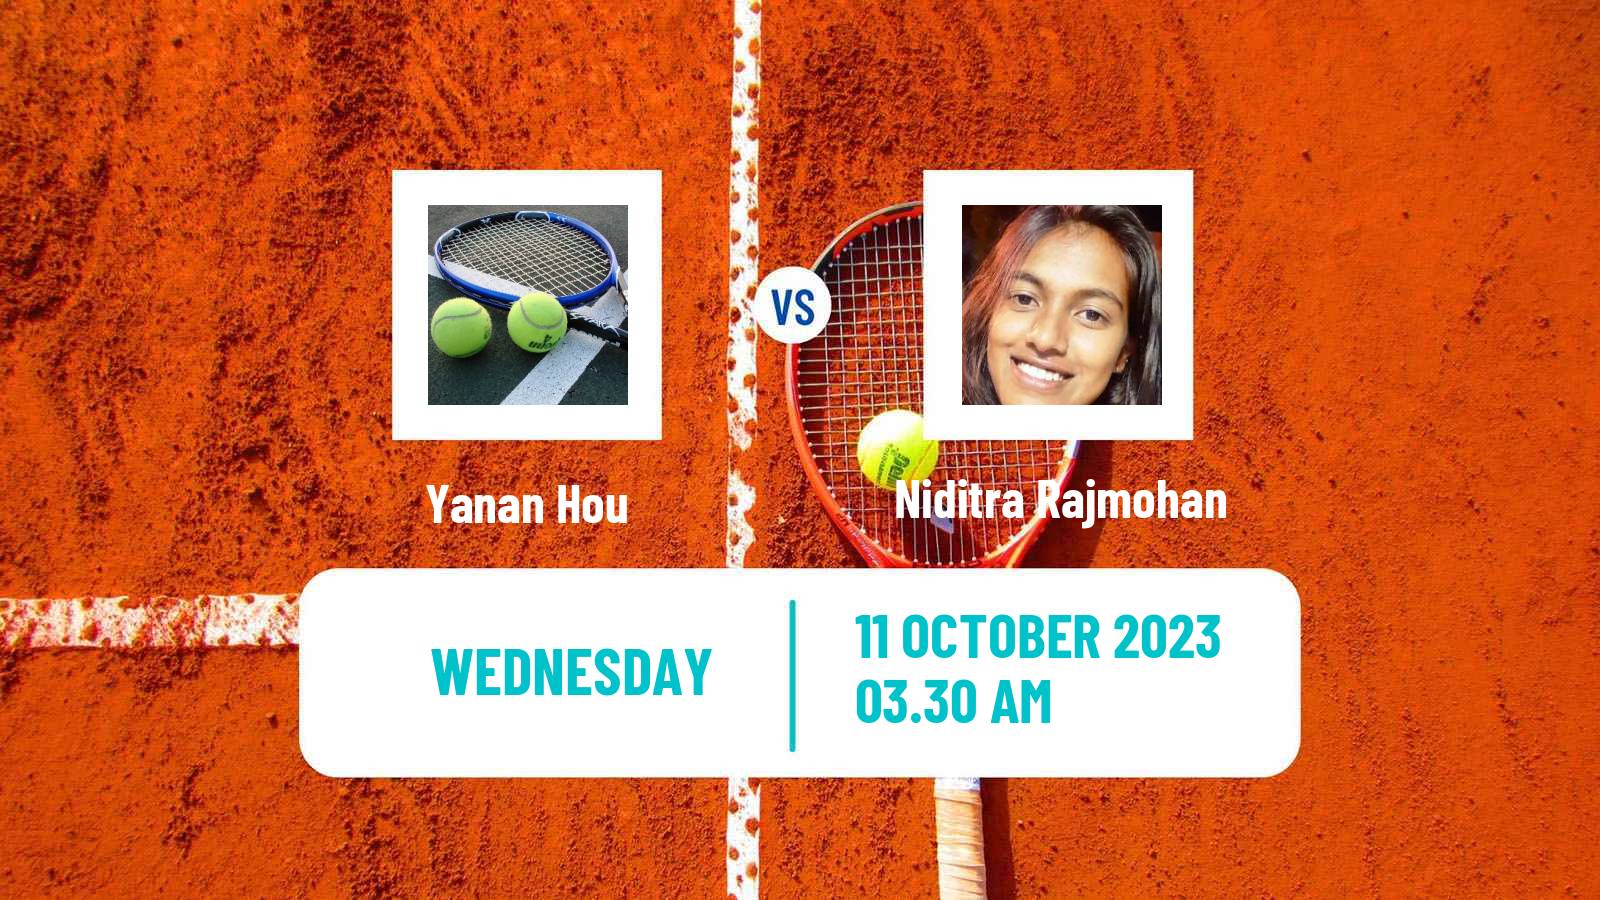 Tennis ITF W15 Hua Hin Women Yanan Hou - Niditra Rajmohan